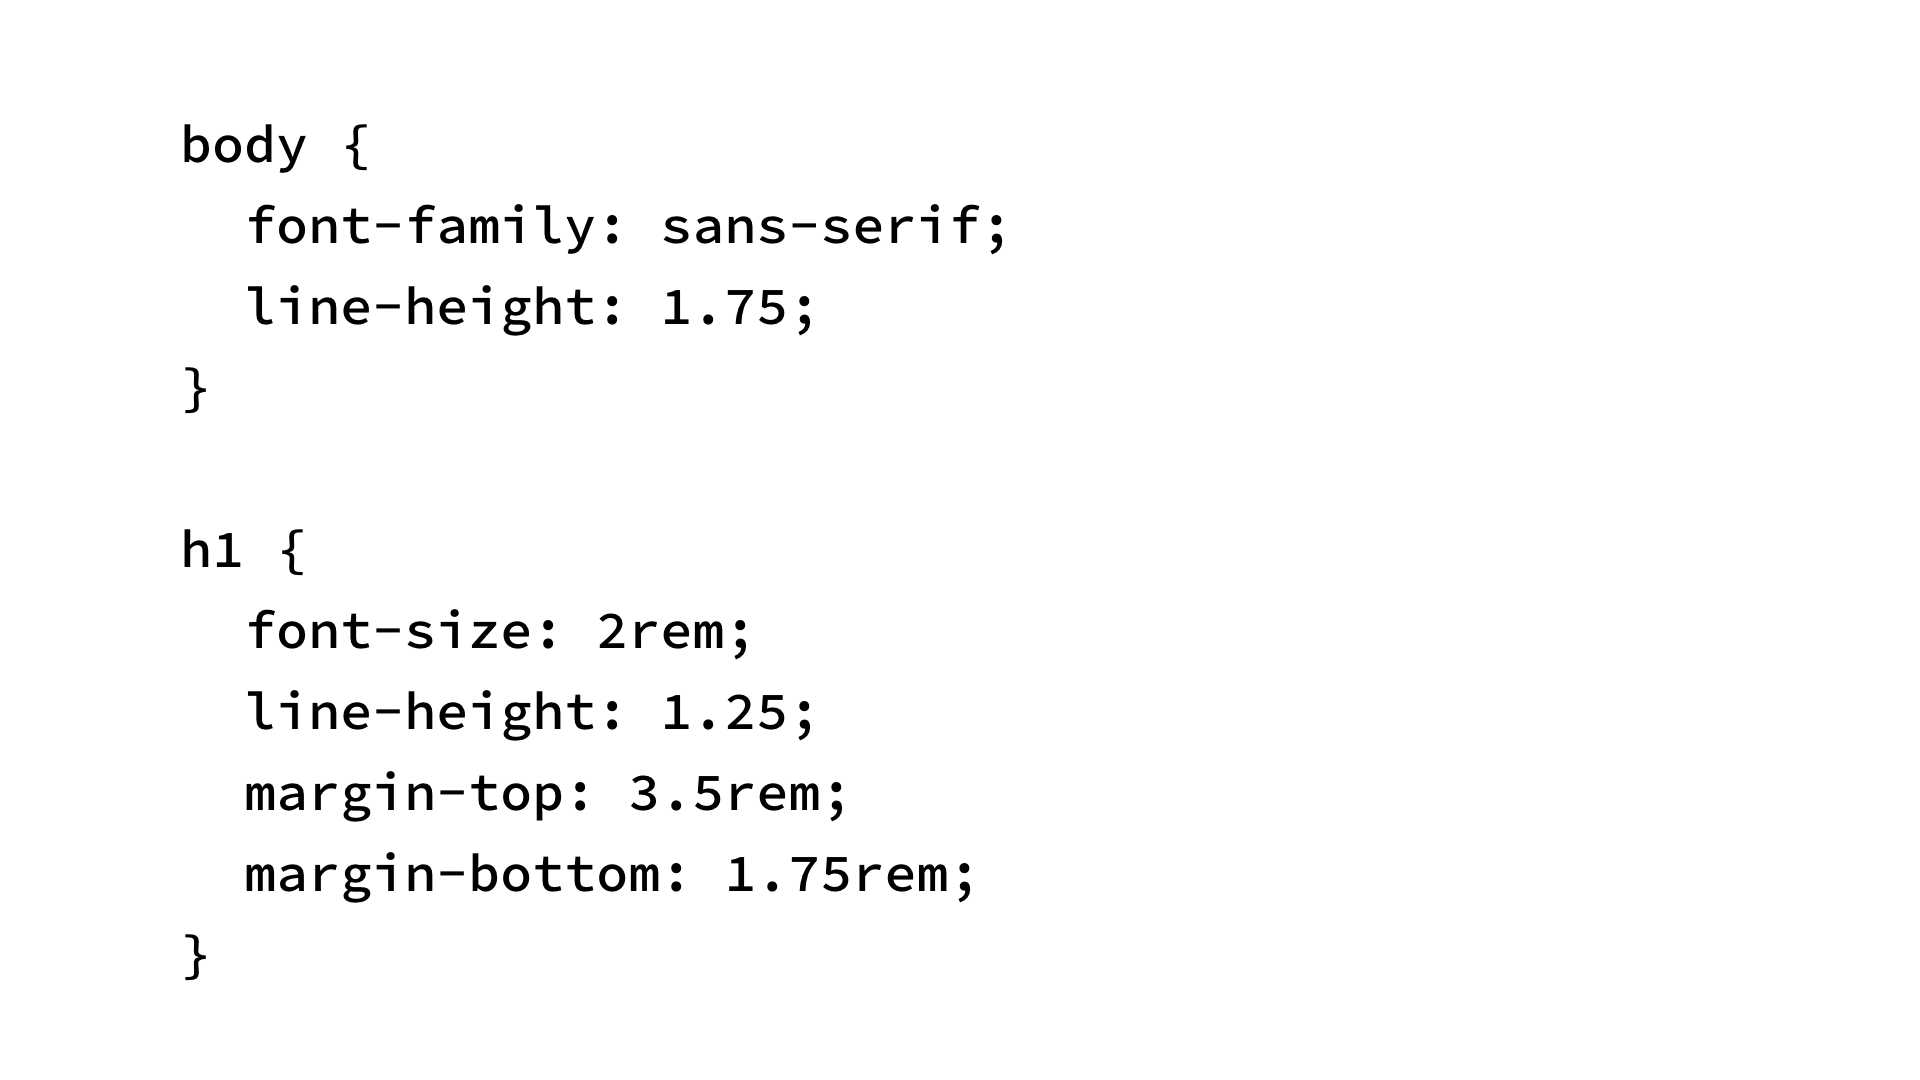 body { font-family: sans-serif; line-height: 1.75; } h1 { font-size: 2rem; line-height: 1.25; margin-top: 3.5rem; margin-bottom: 1.75rem; }